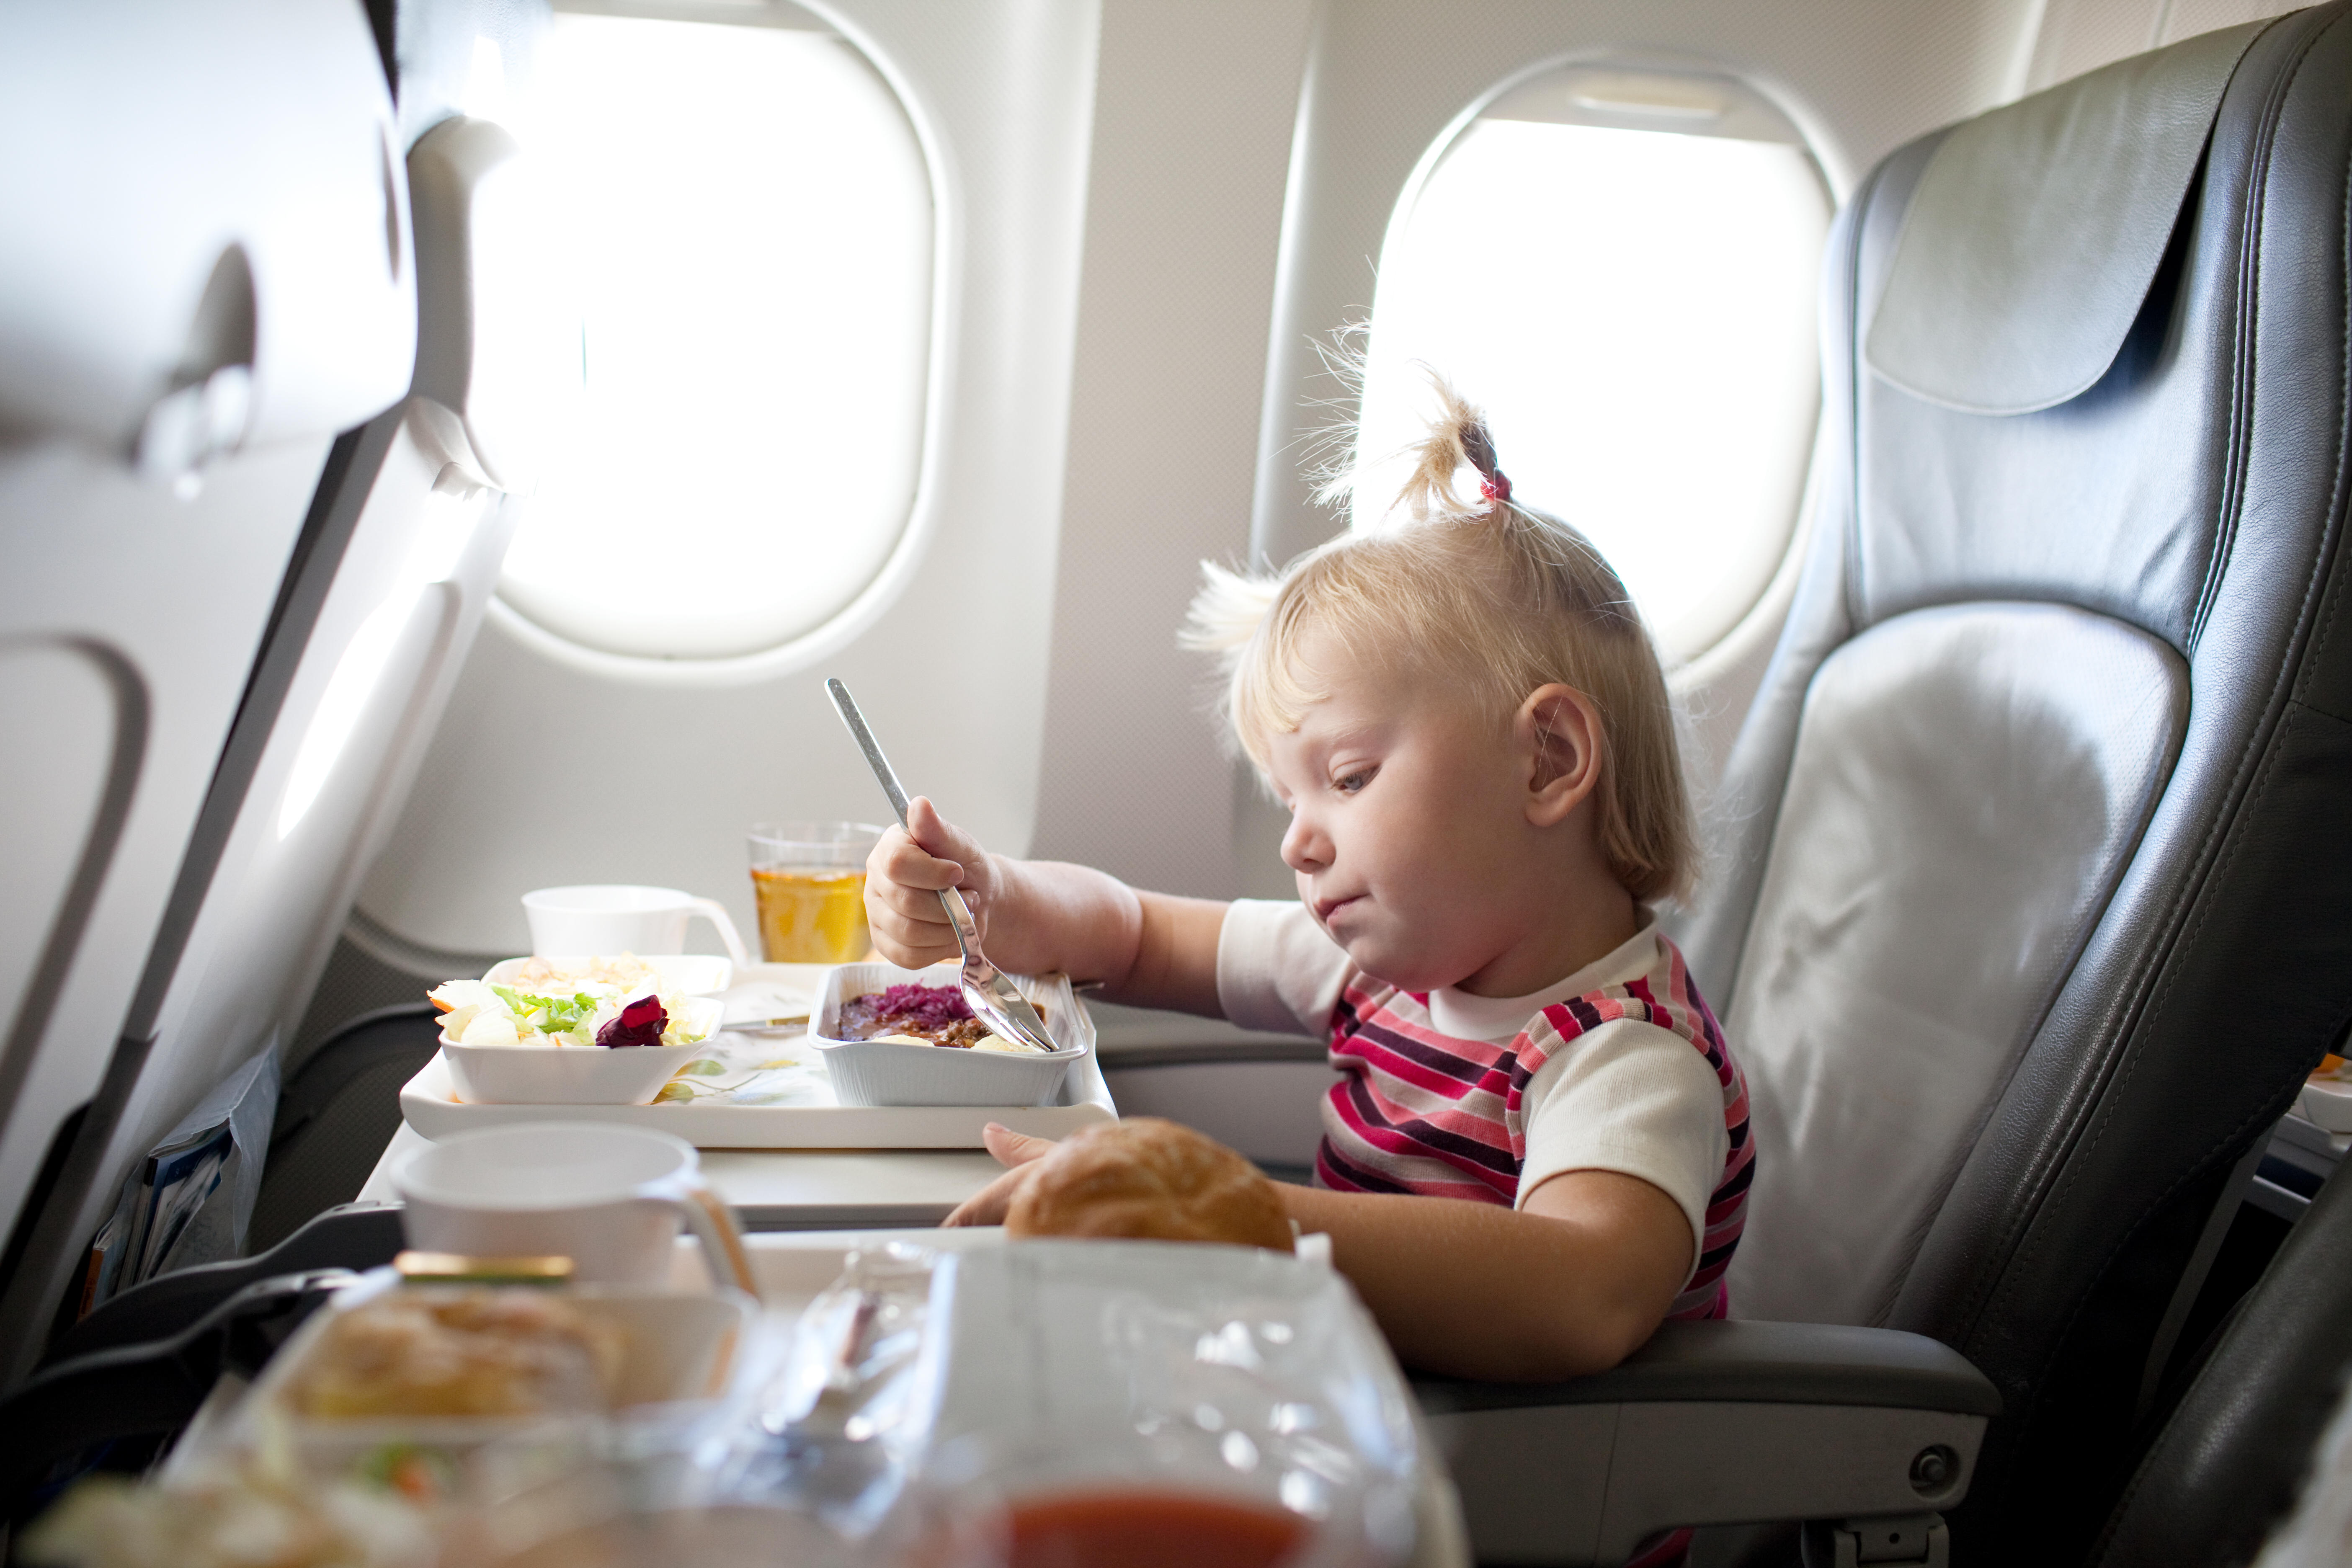 Kind in een vliegtuigzitje